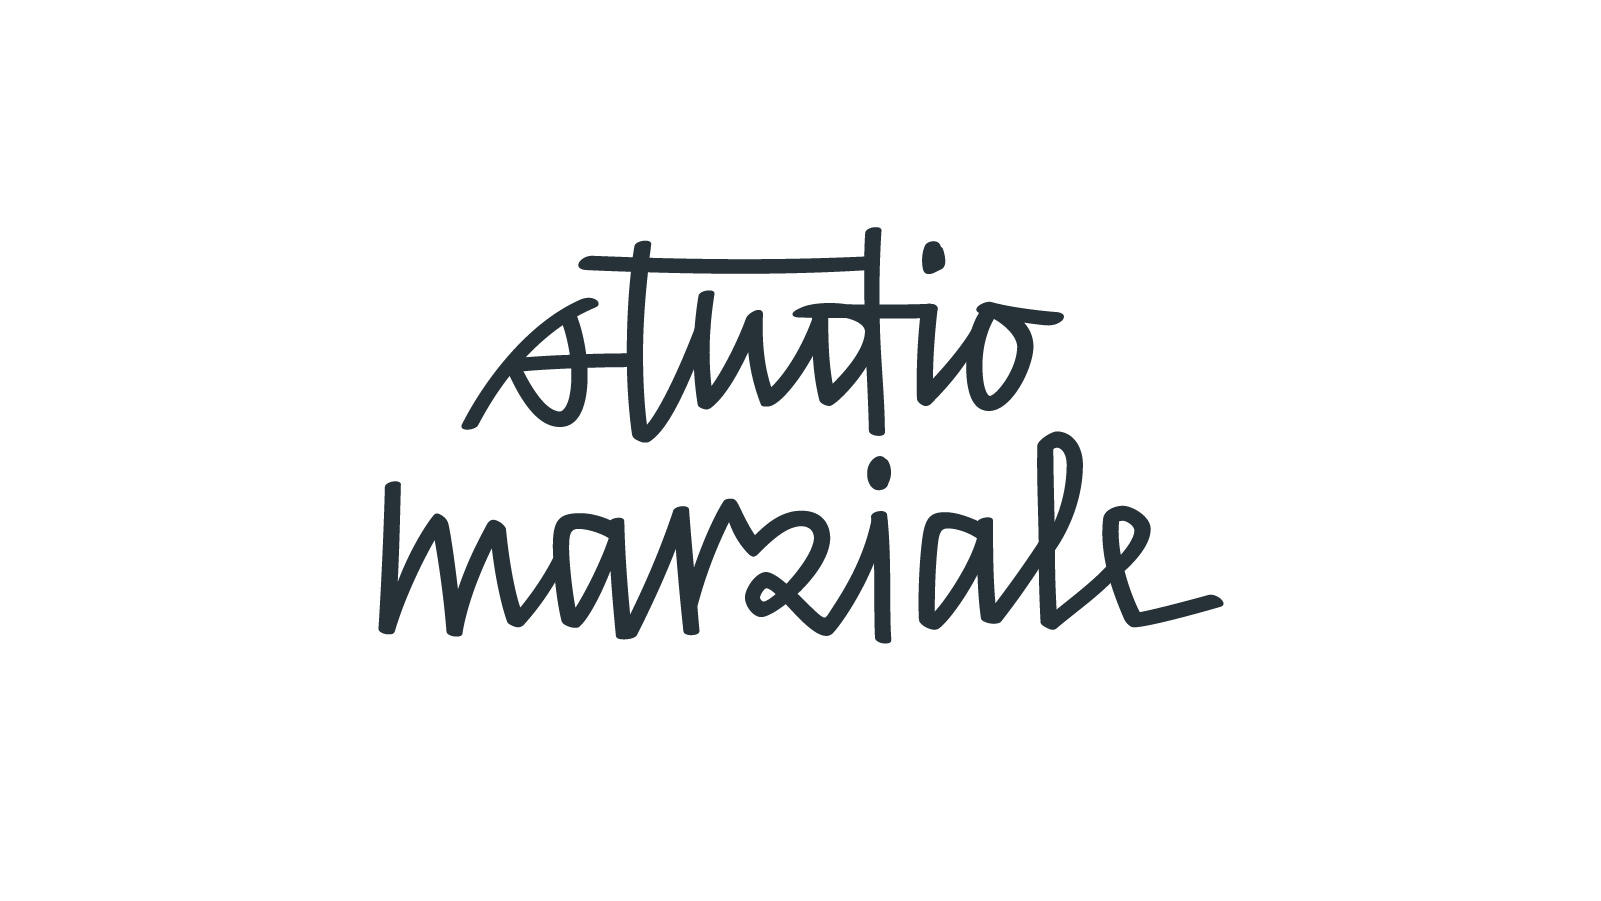 17_studio-marziale.png